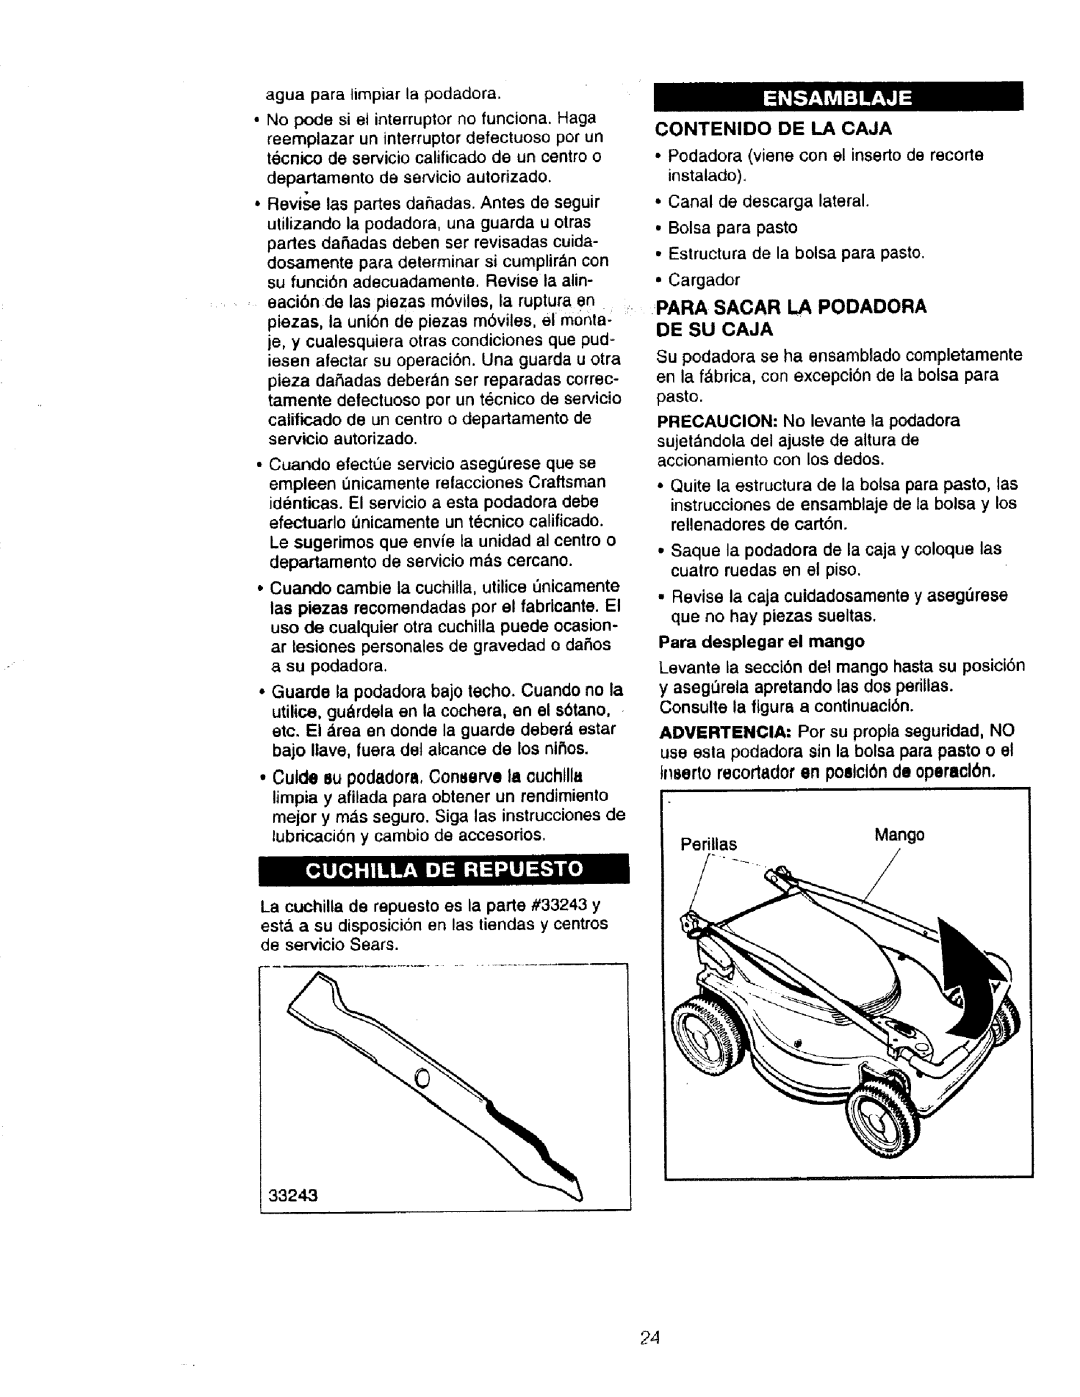 Craftsman 900.370520 manual Contenido De La Caja 